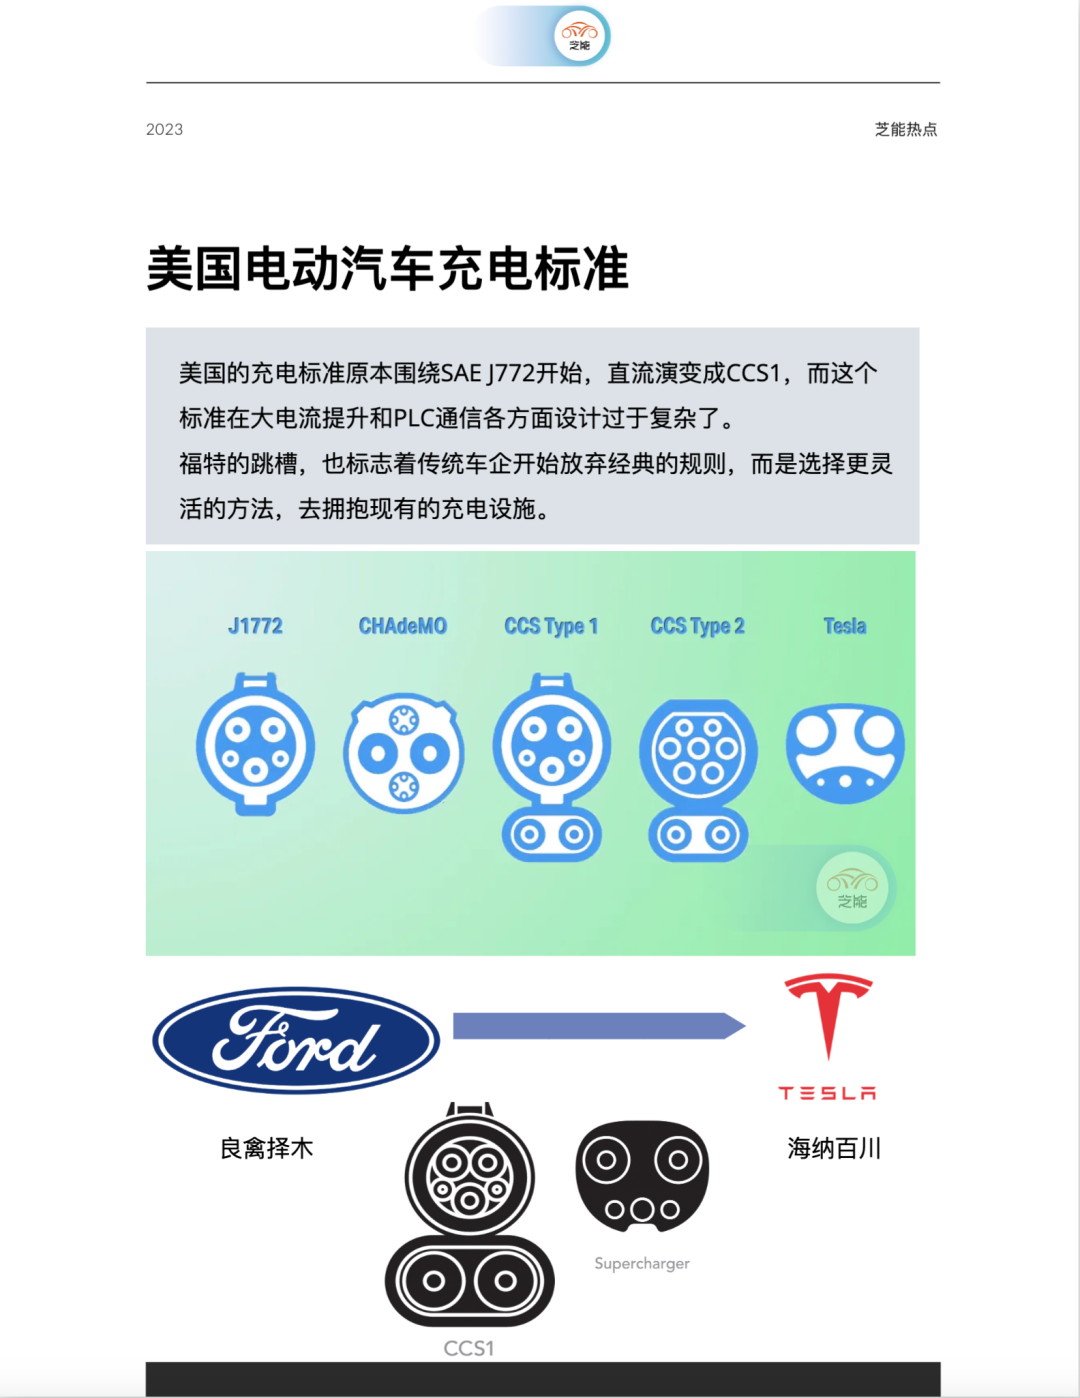 福特电动汽车将采用特斯拉的充电标准